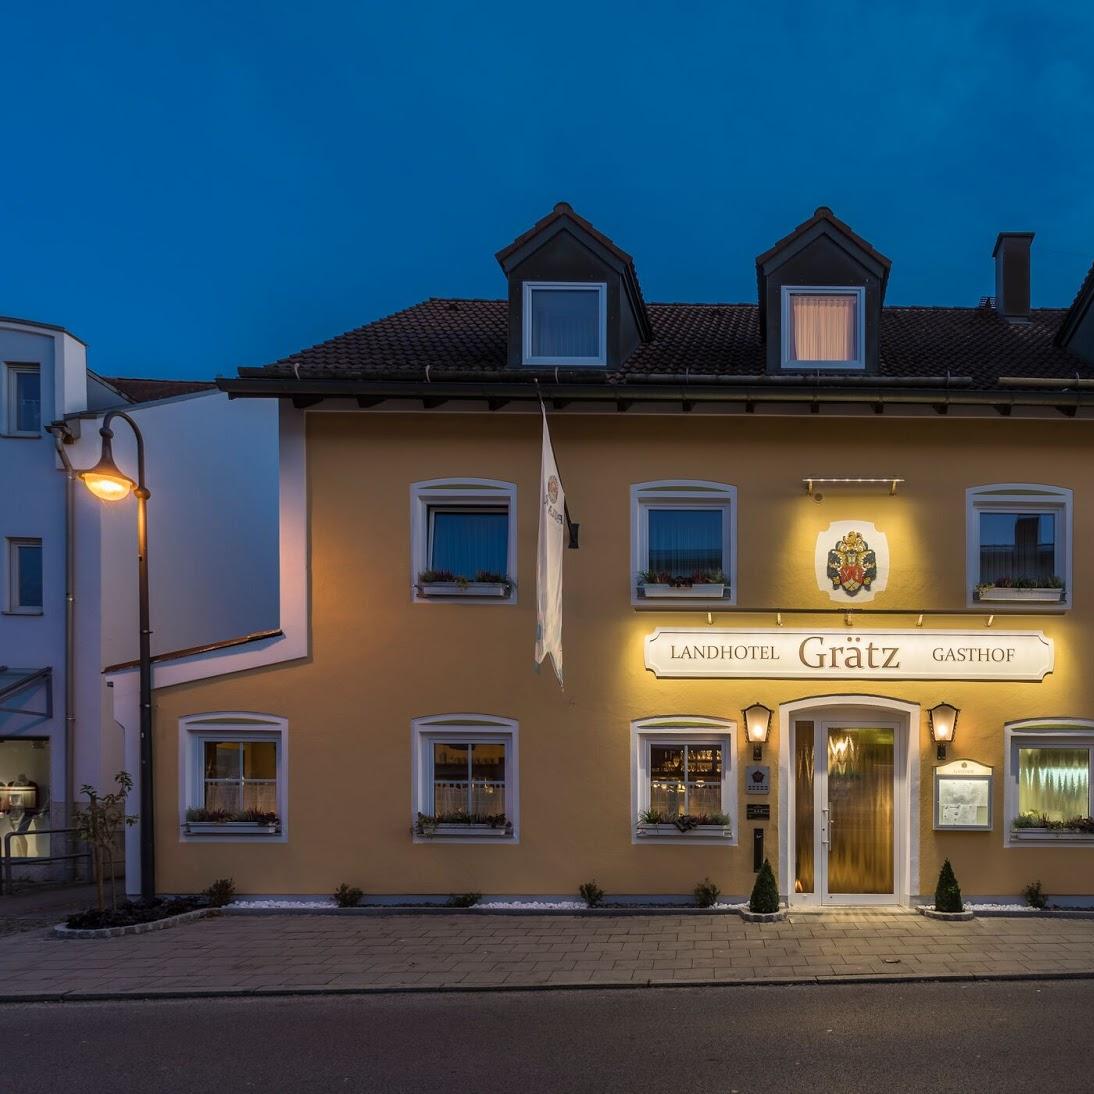 Restaurant "Landhotel Grätz" in Emmering